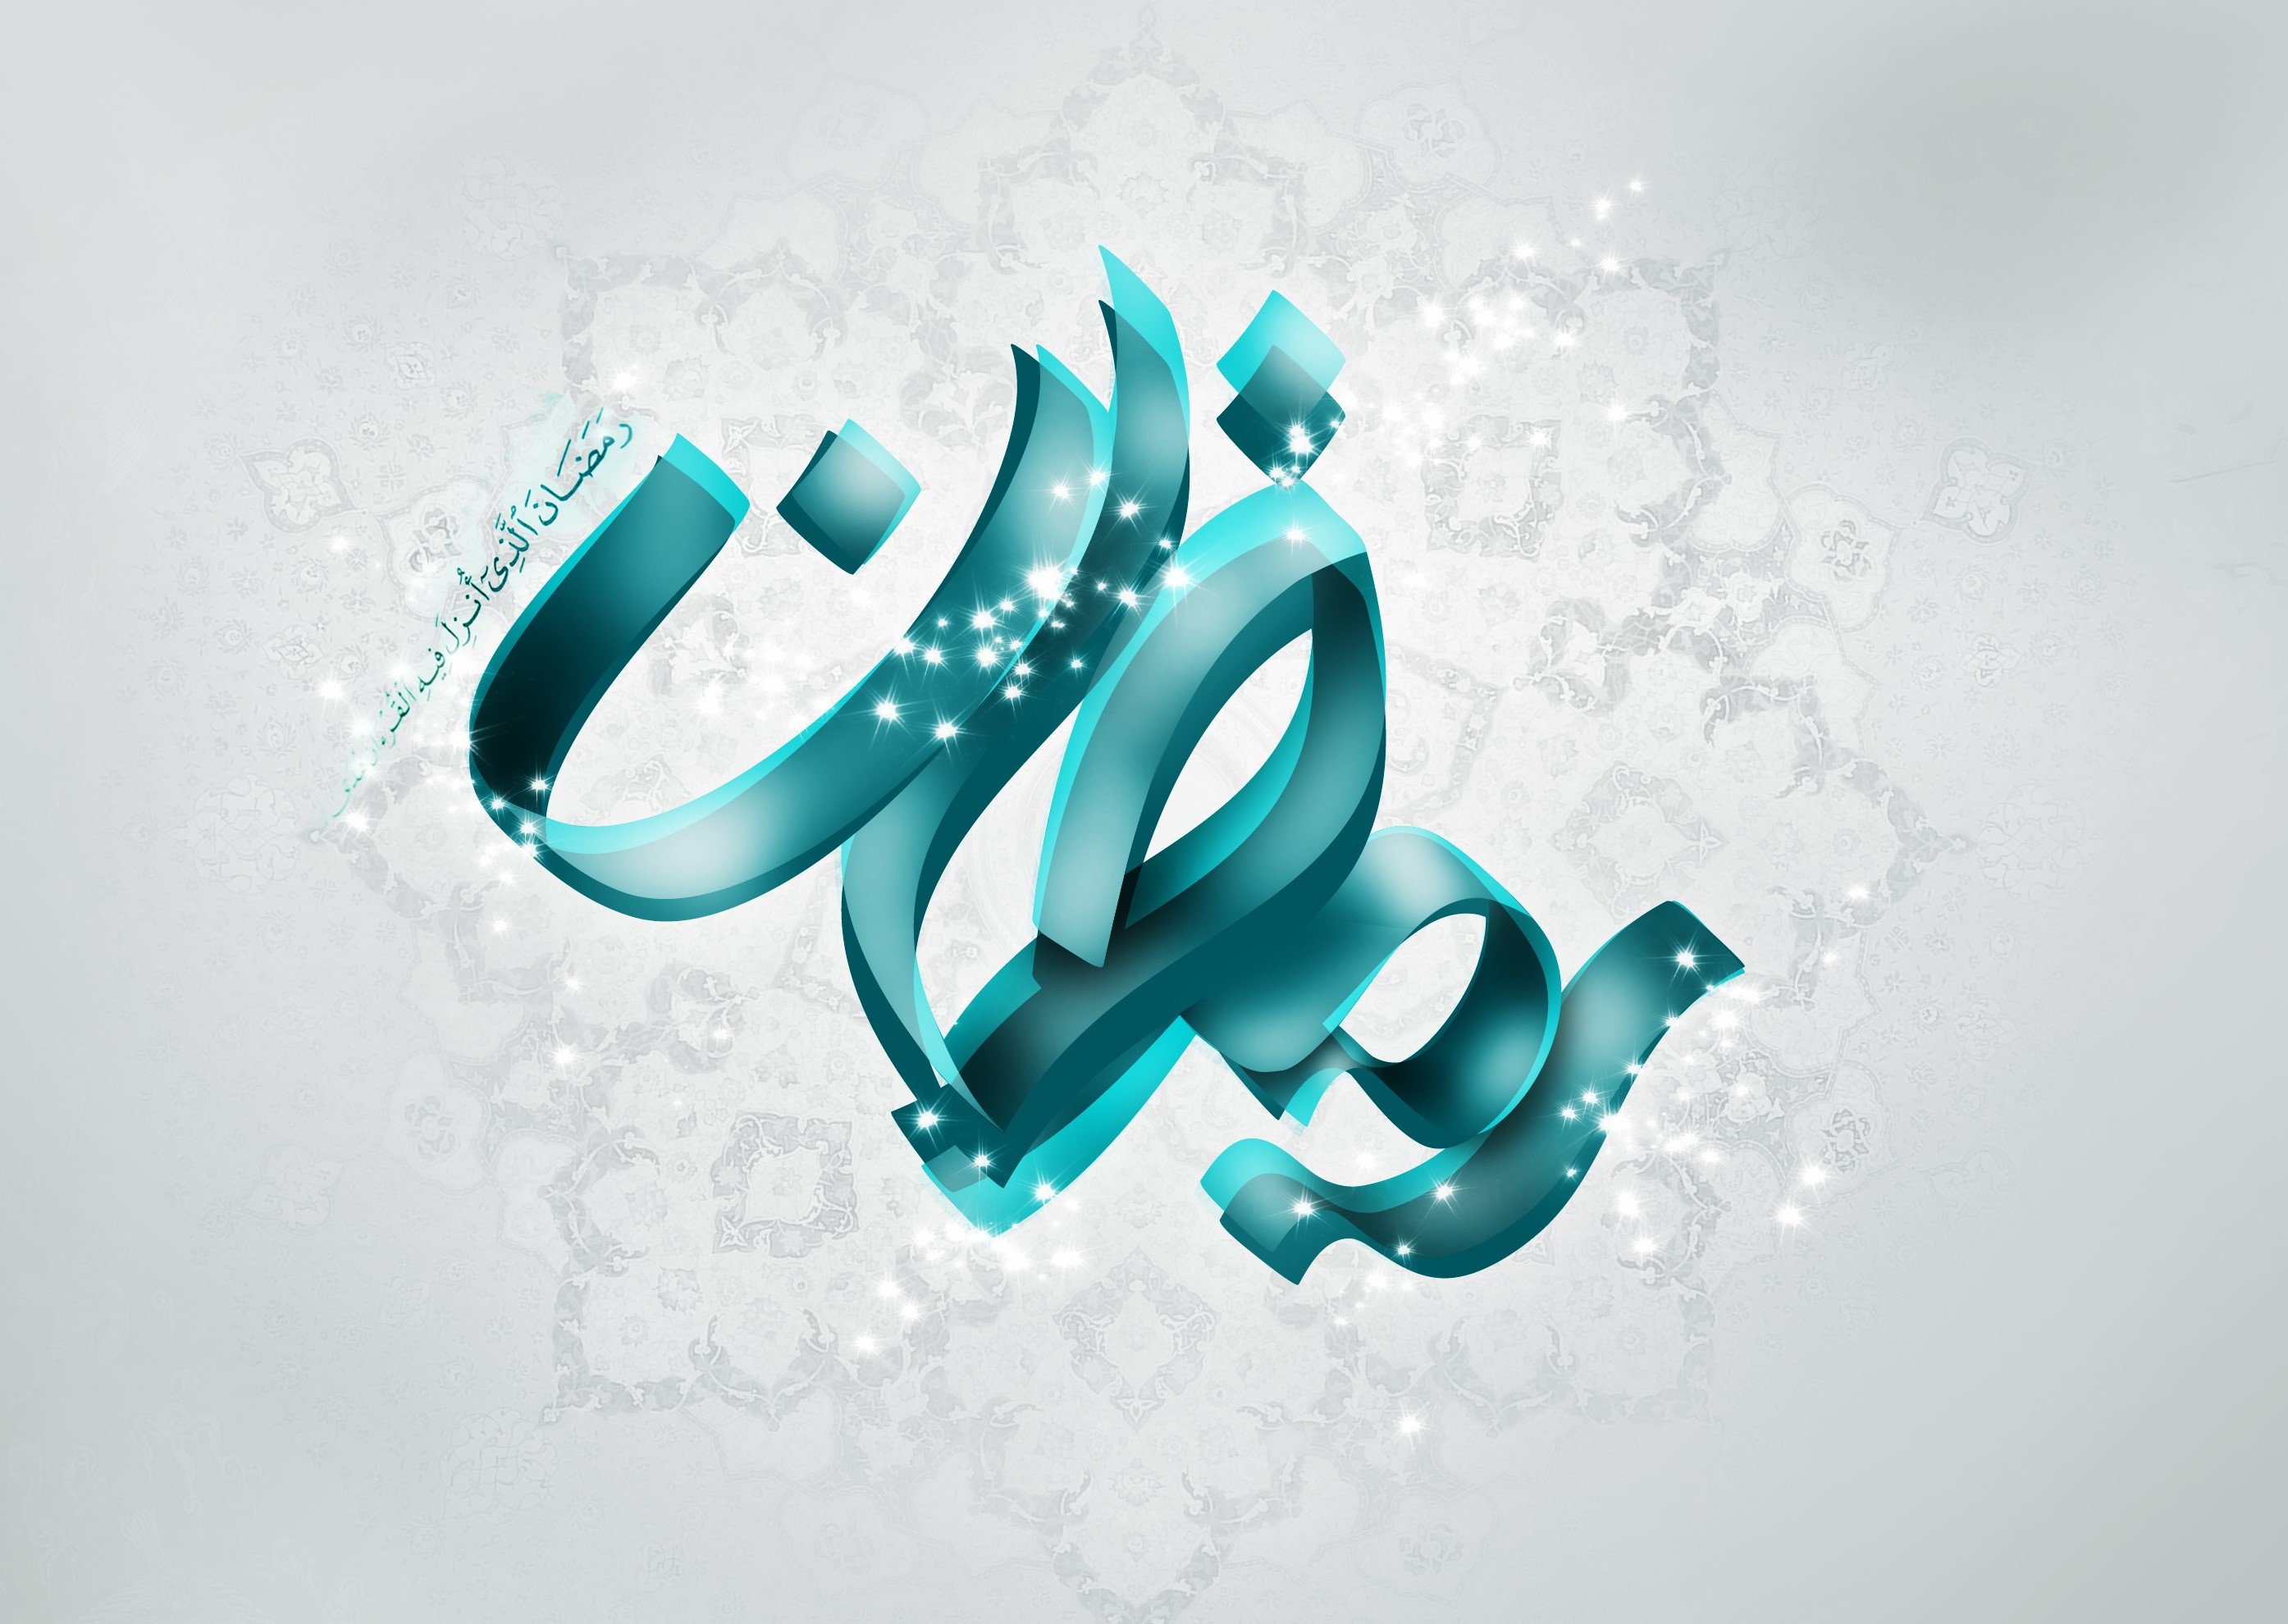 چرا بیشتر دعاها با اللهم آغاز می شود؟/ عظمت عبادت روزه در چیست؟